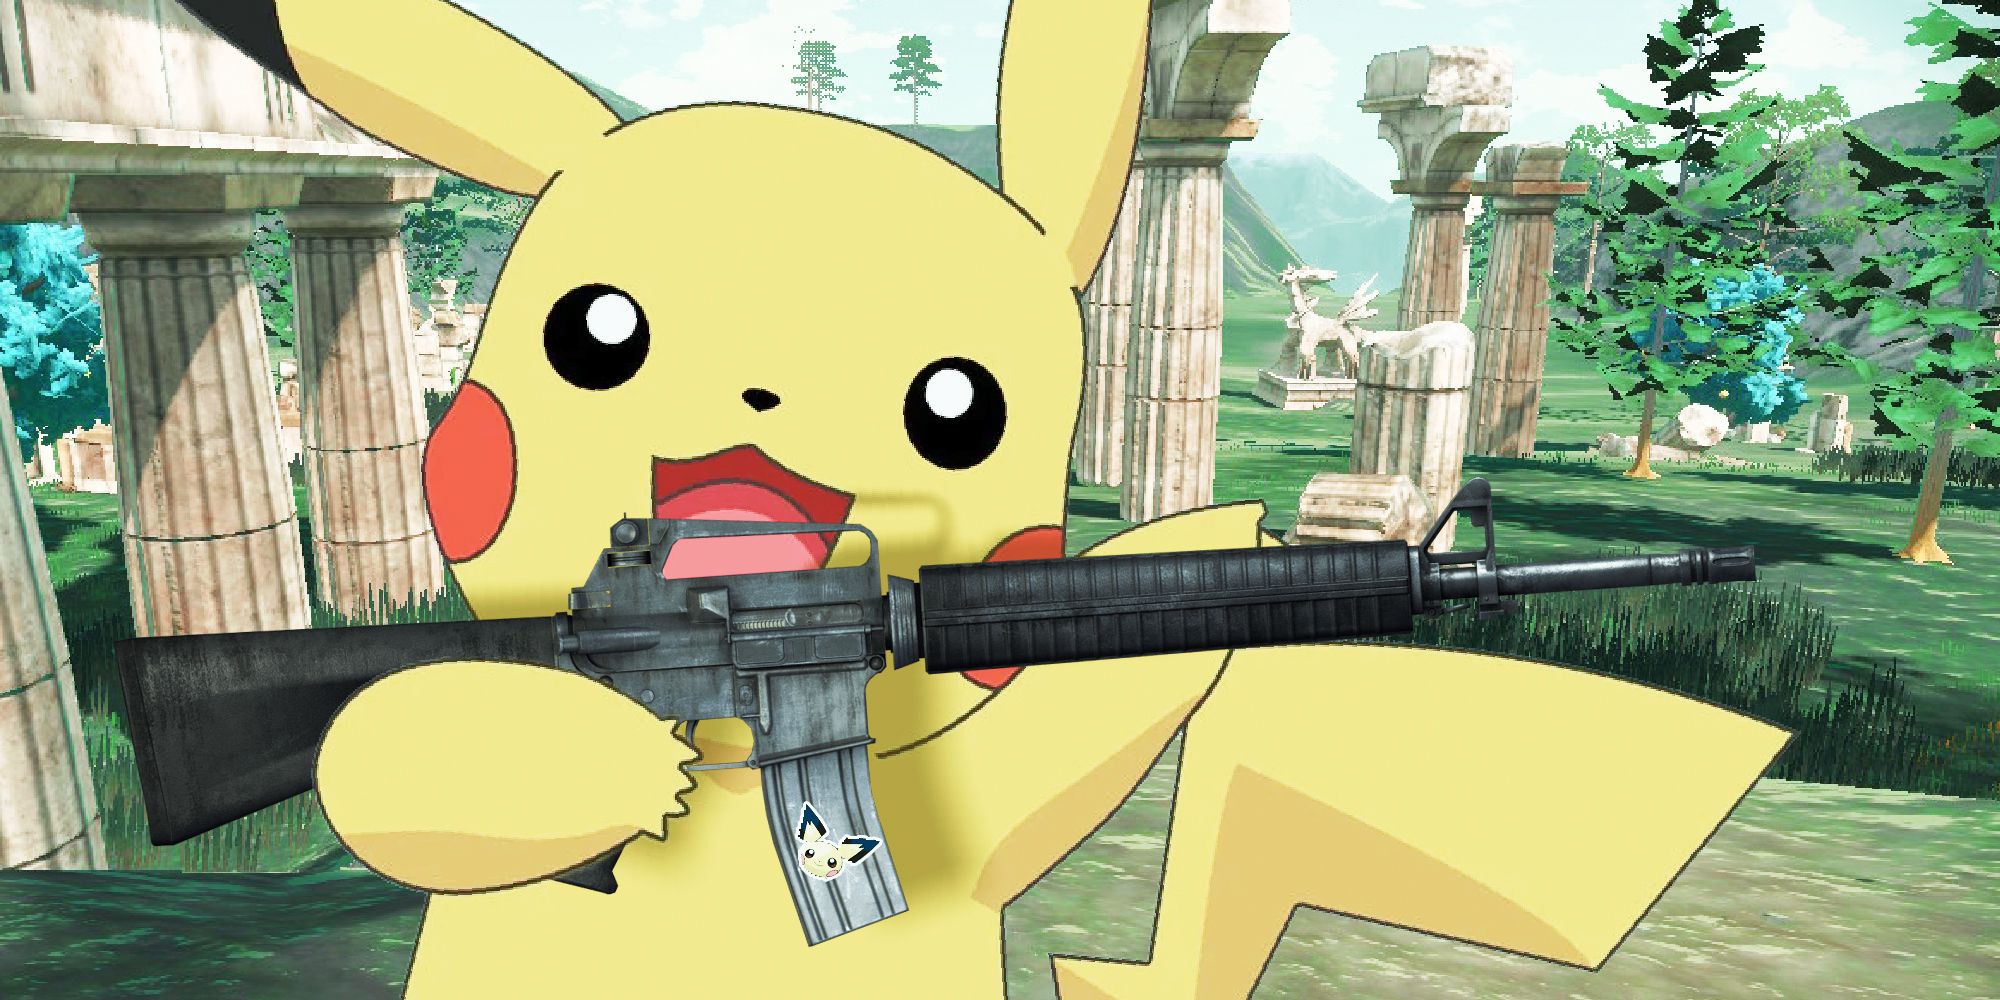 Pikachu brandishing an M16